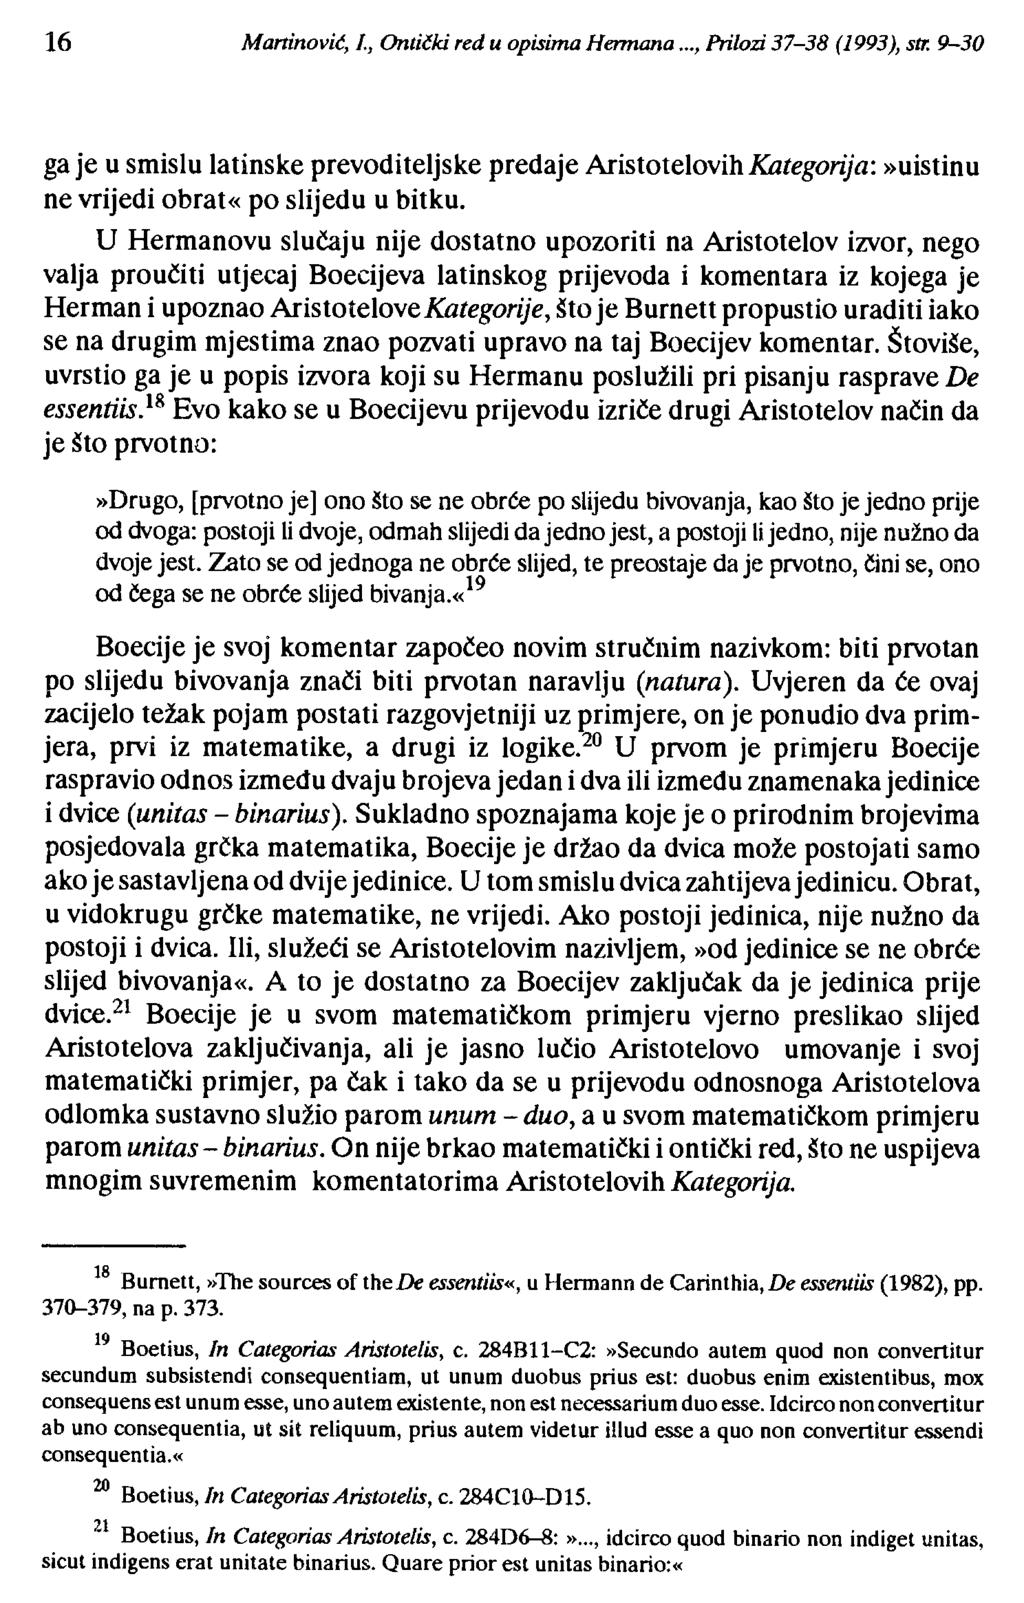 16 Martinovi~, 1, Ontički red u opisima Hermana..., Prilozi 37-38 (1993), str.